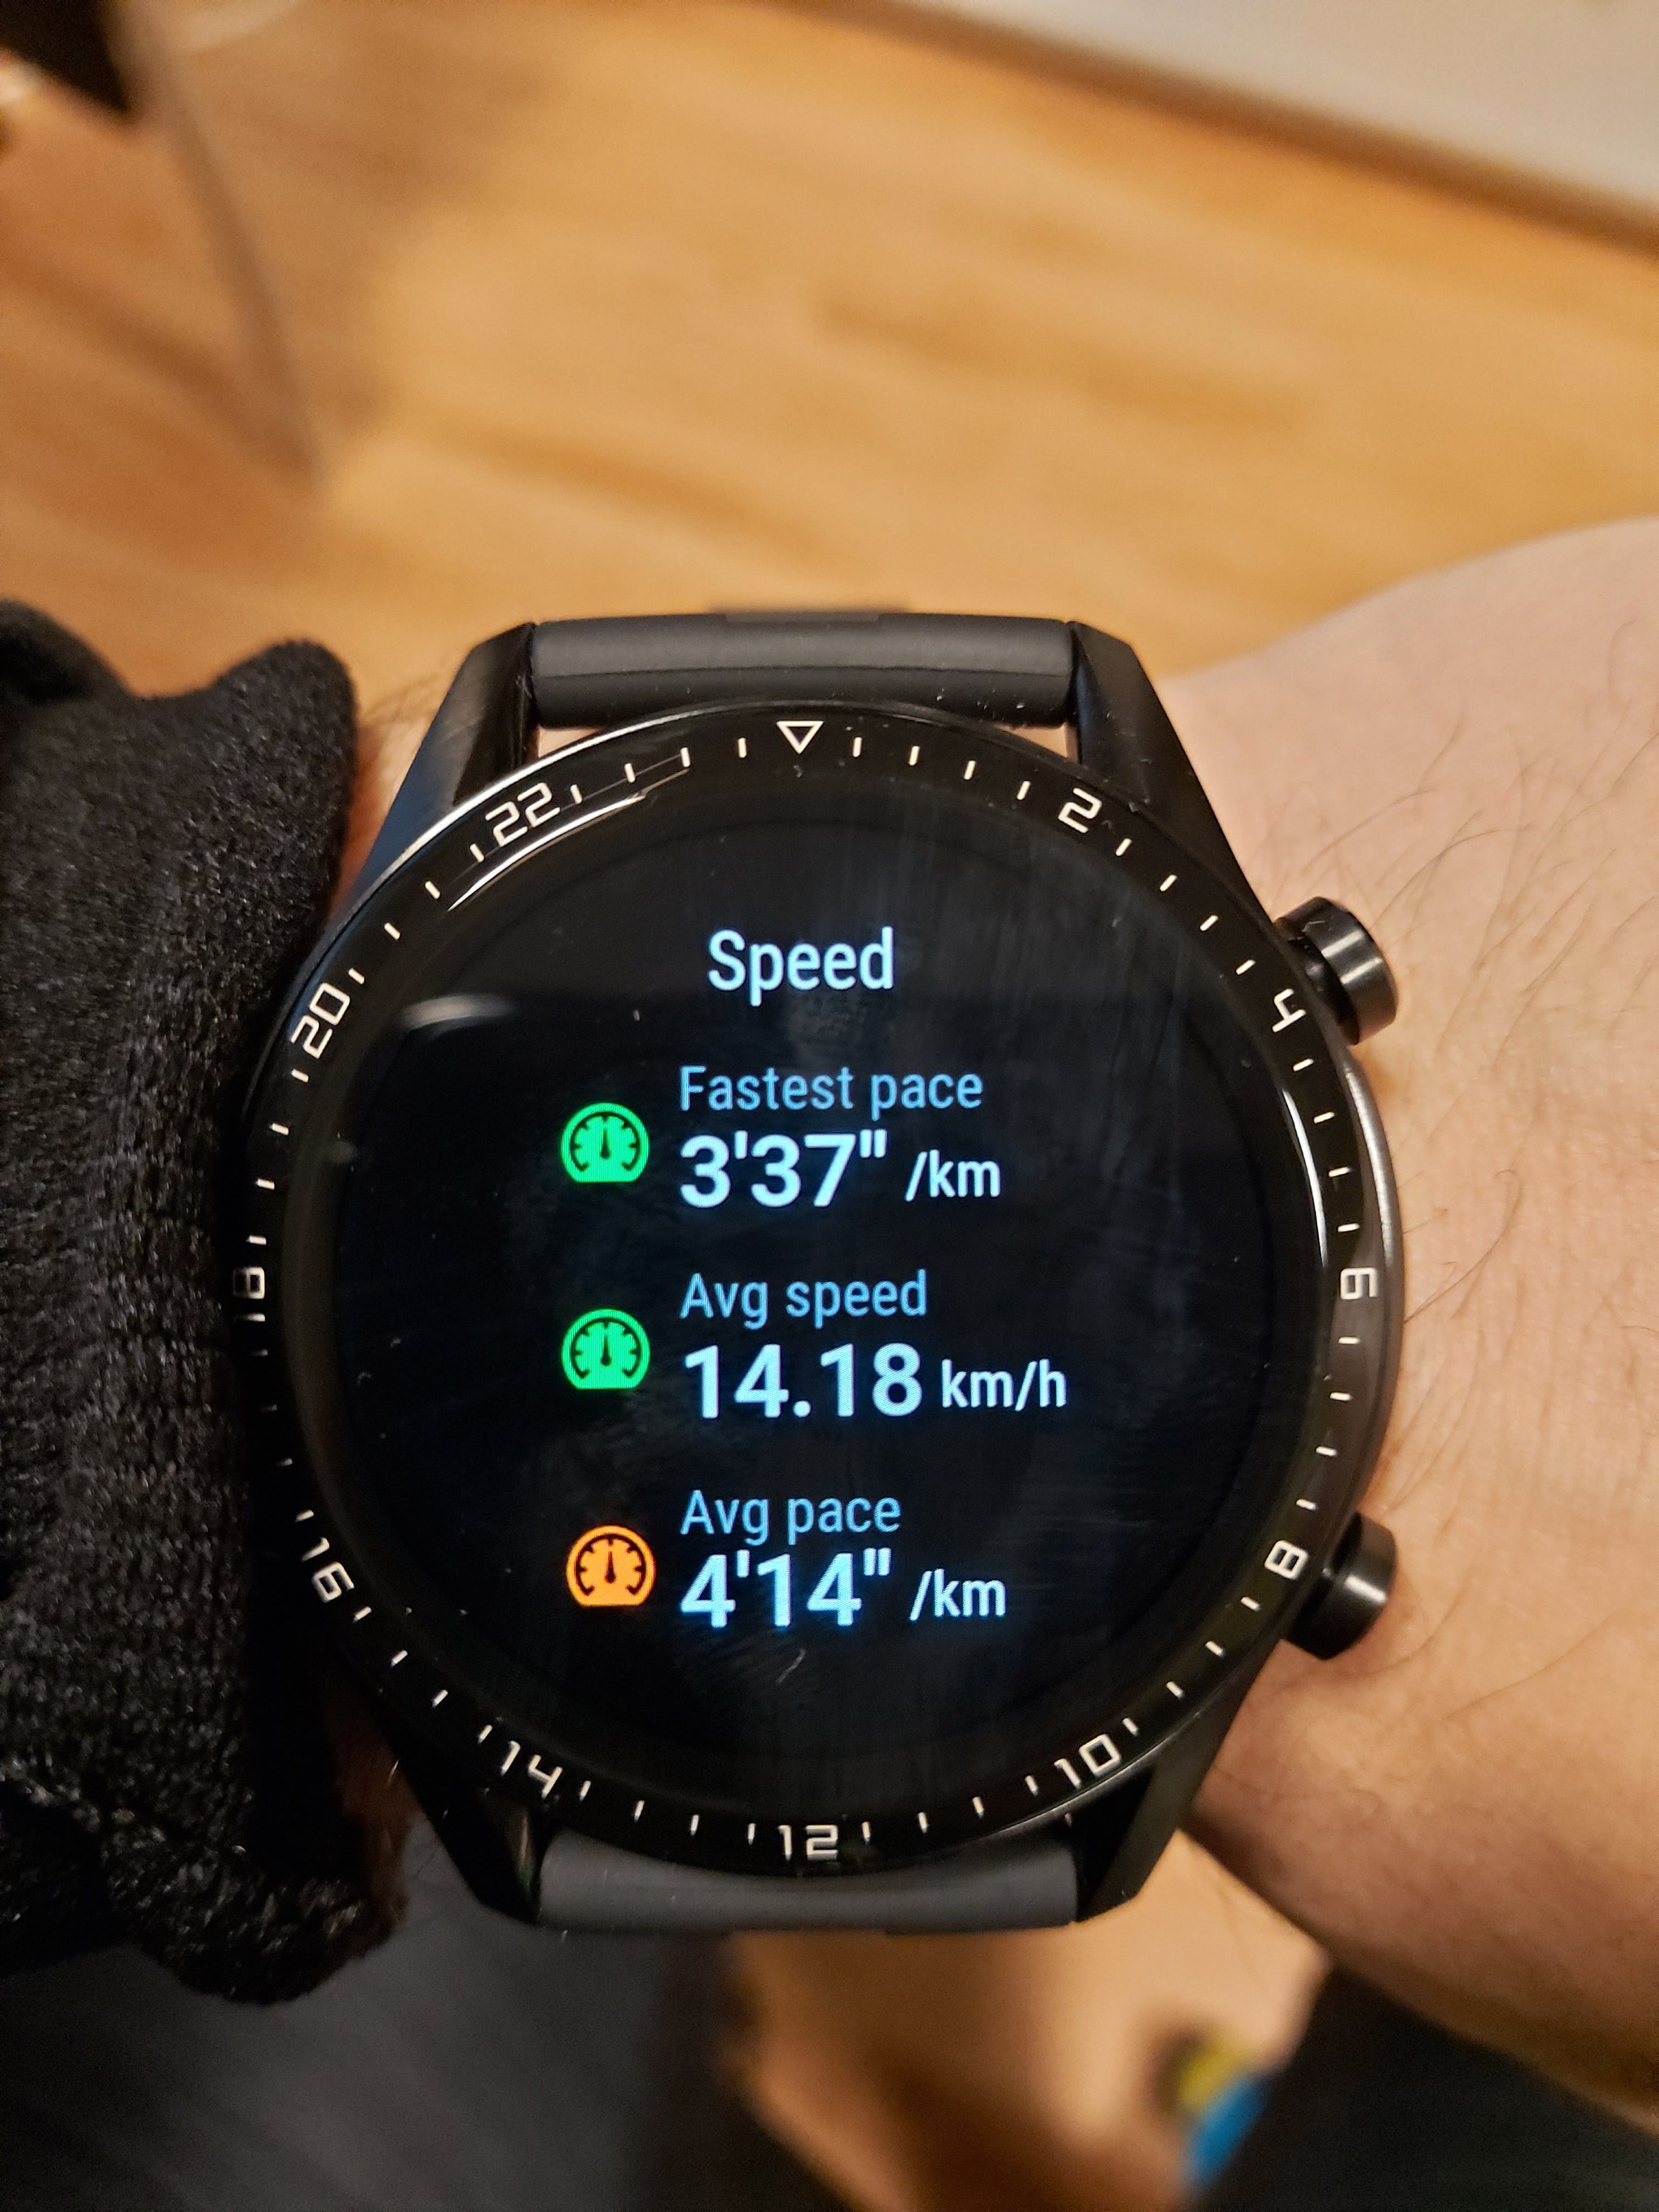 Huawei Watch GT 2 GPS accuracy. The 